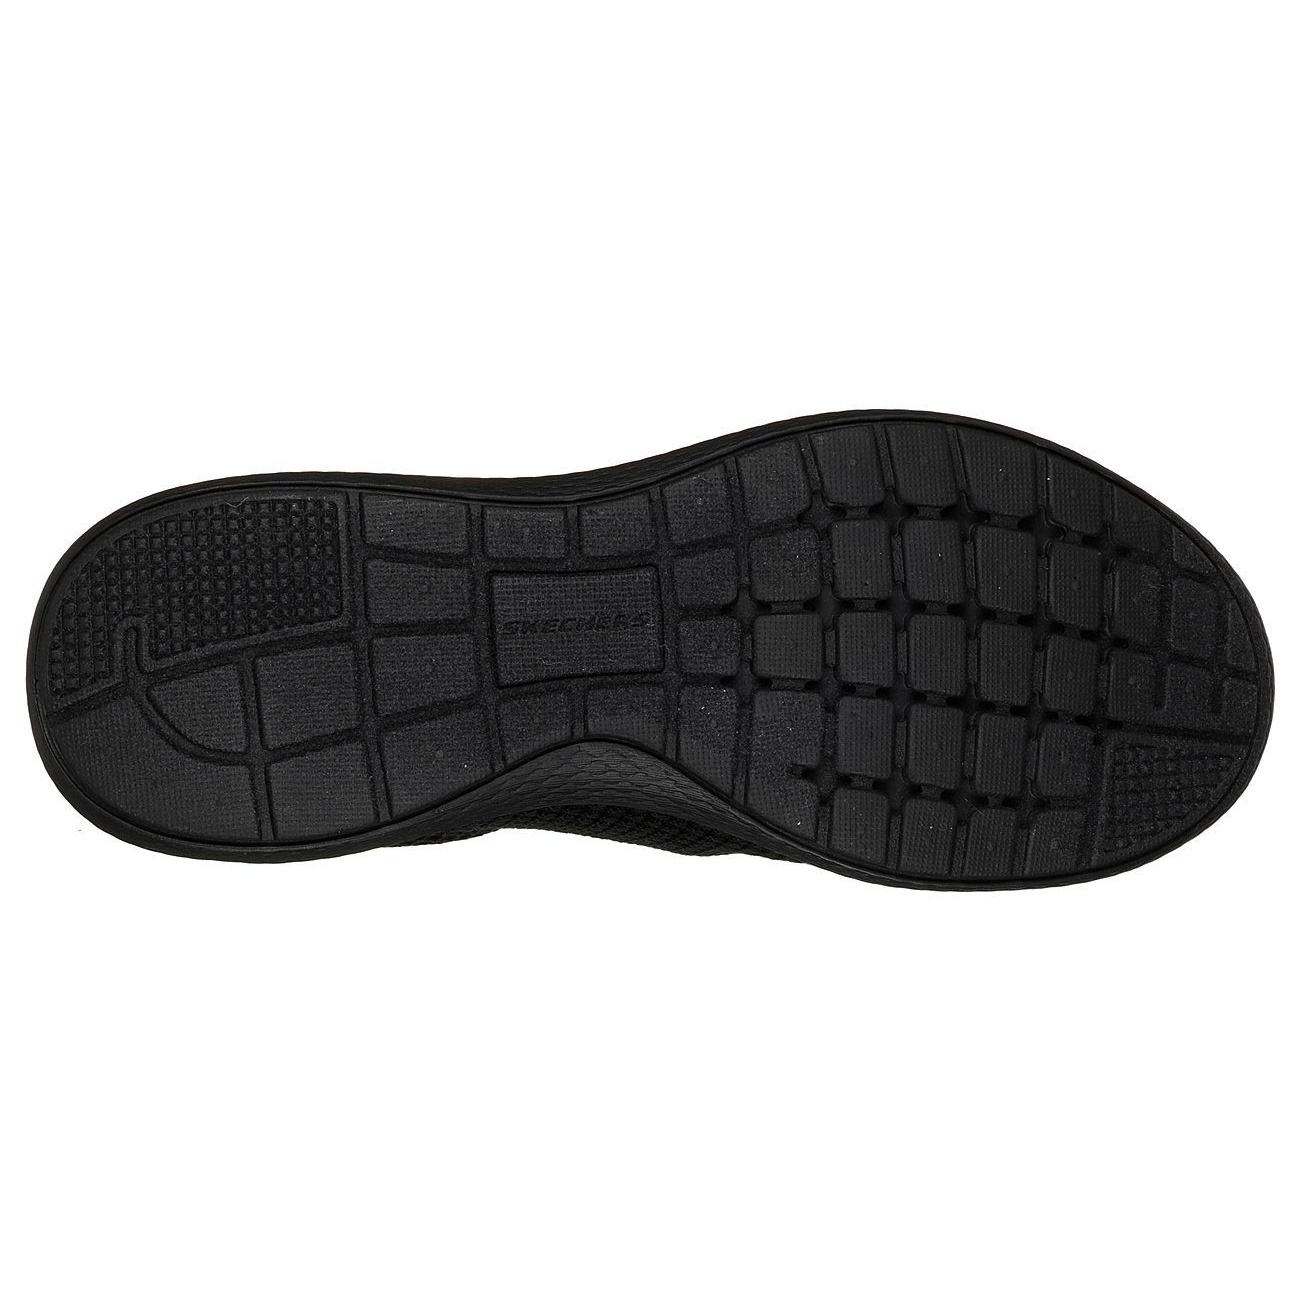 کفش مخصوص پیاده روی مردانه اسکچرز مدل 52885bbk